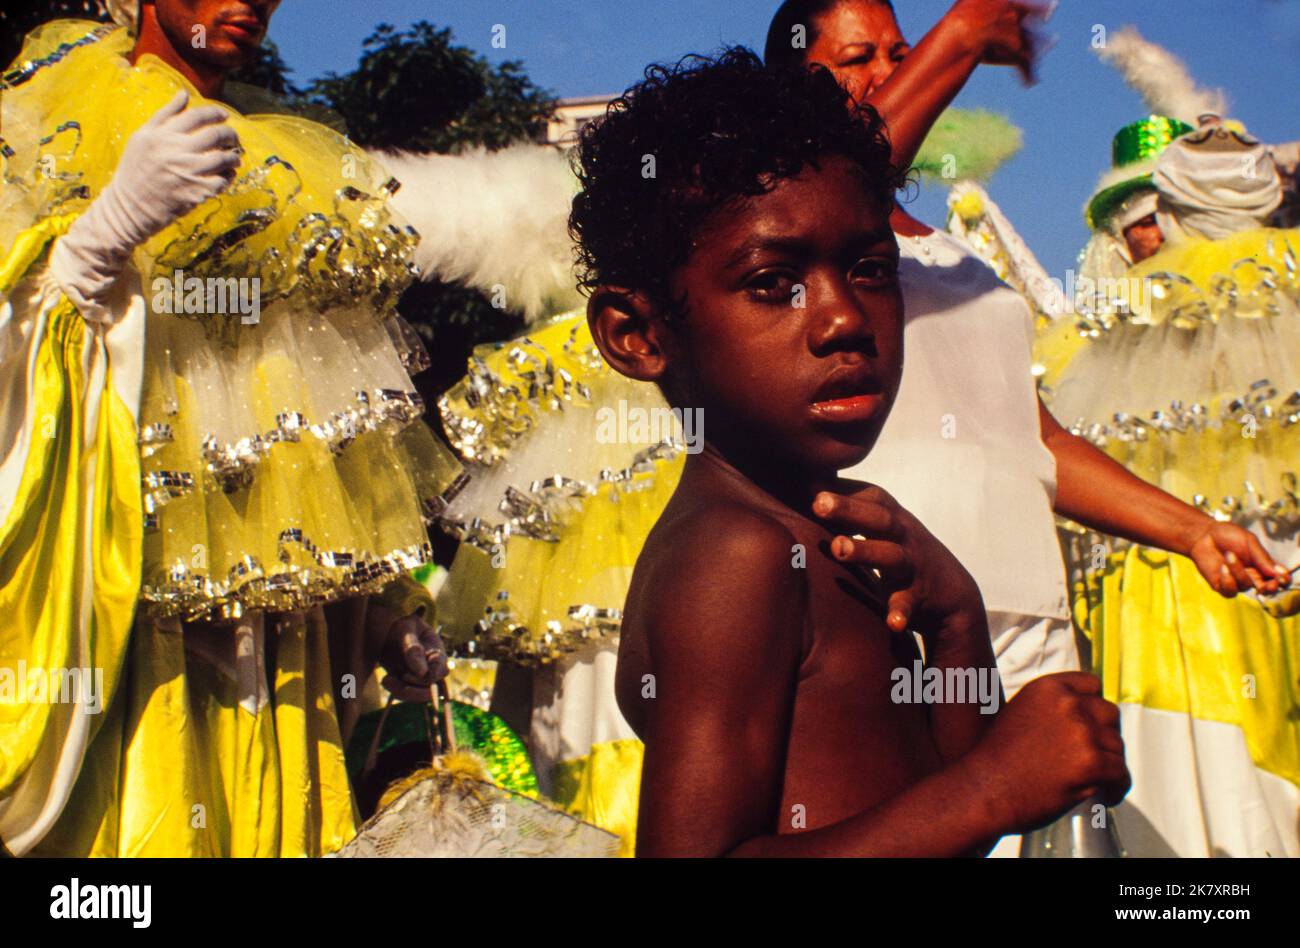 Street Child genießt den Karnevalsblock´s der Innenstadt der Stadt - eine Band, die Menschenmassen mobilisiert und der wichtigste populäre Ausdruck des brasilianischen Straßenkarnevals ist. Stockfoto